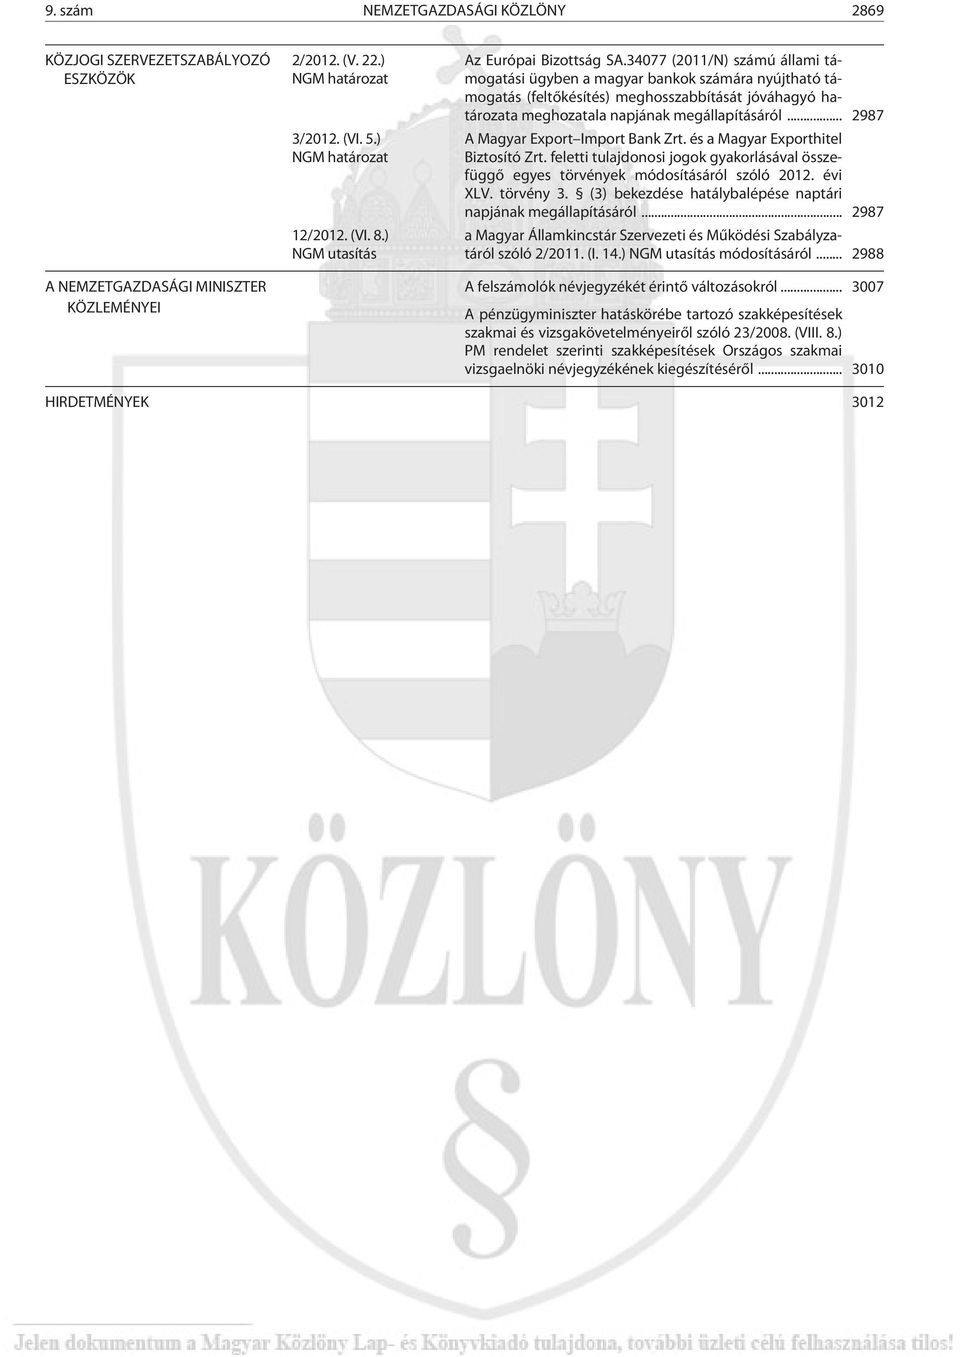 .. 2987 A Magyar Export Import Bank Zrt. és a Magyar Exporthitel Biztosító Zrt. feletti tulajdonosi jogok gyakorlásával összefüggõ egyes törvények módosításáról szóló 2012. évi XLV. törvény 3.